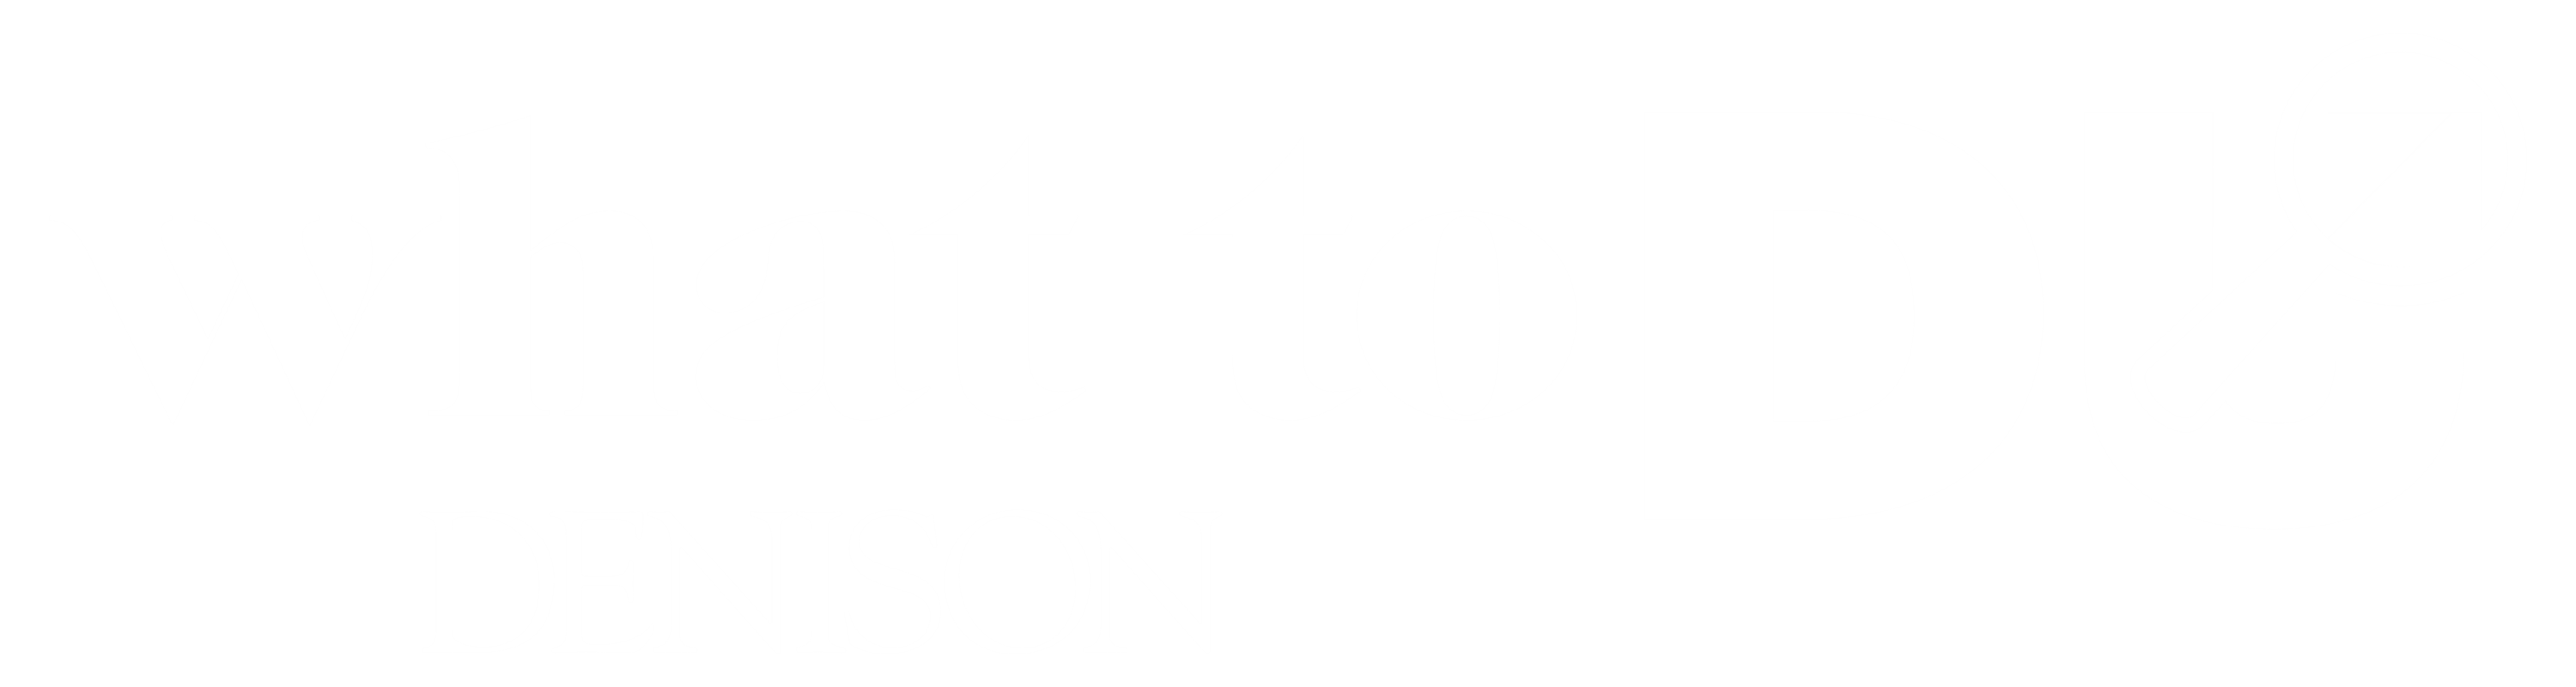 Denison University Logo Image.